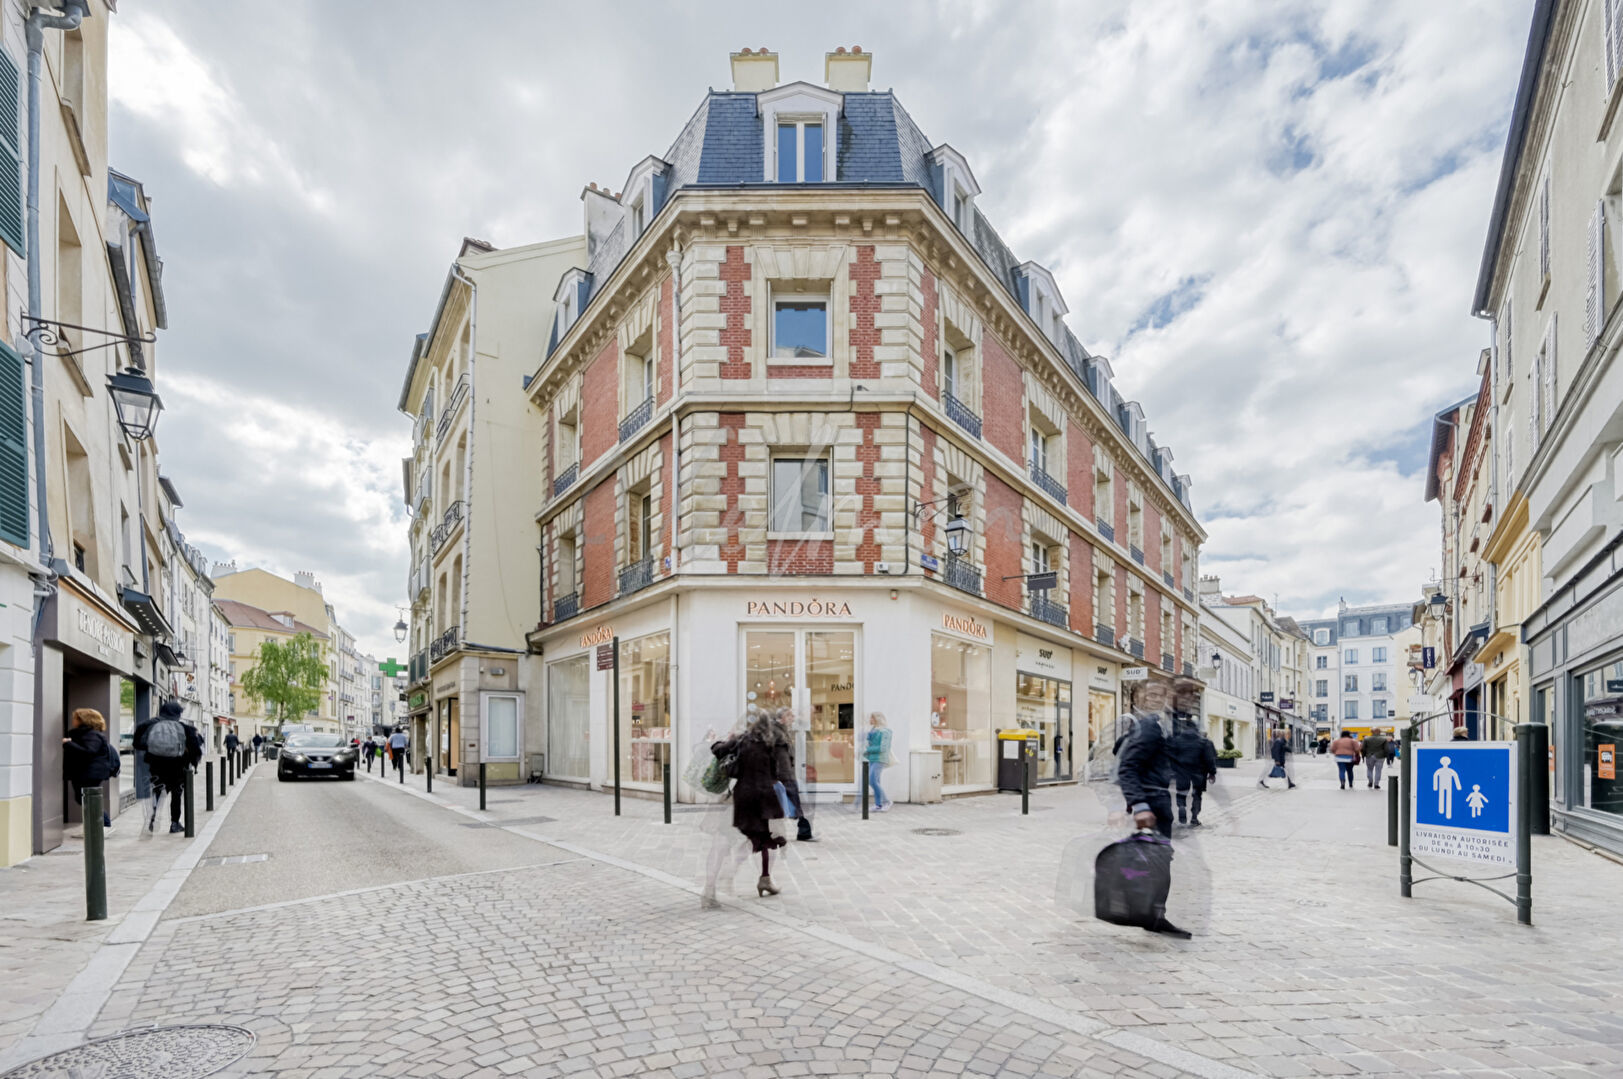 Appartement 3 pièces 60 m² Saint-Germain-en-Laye